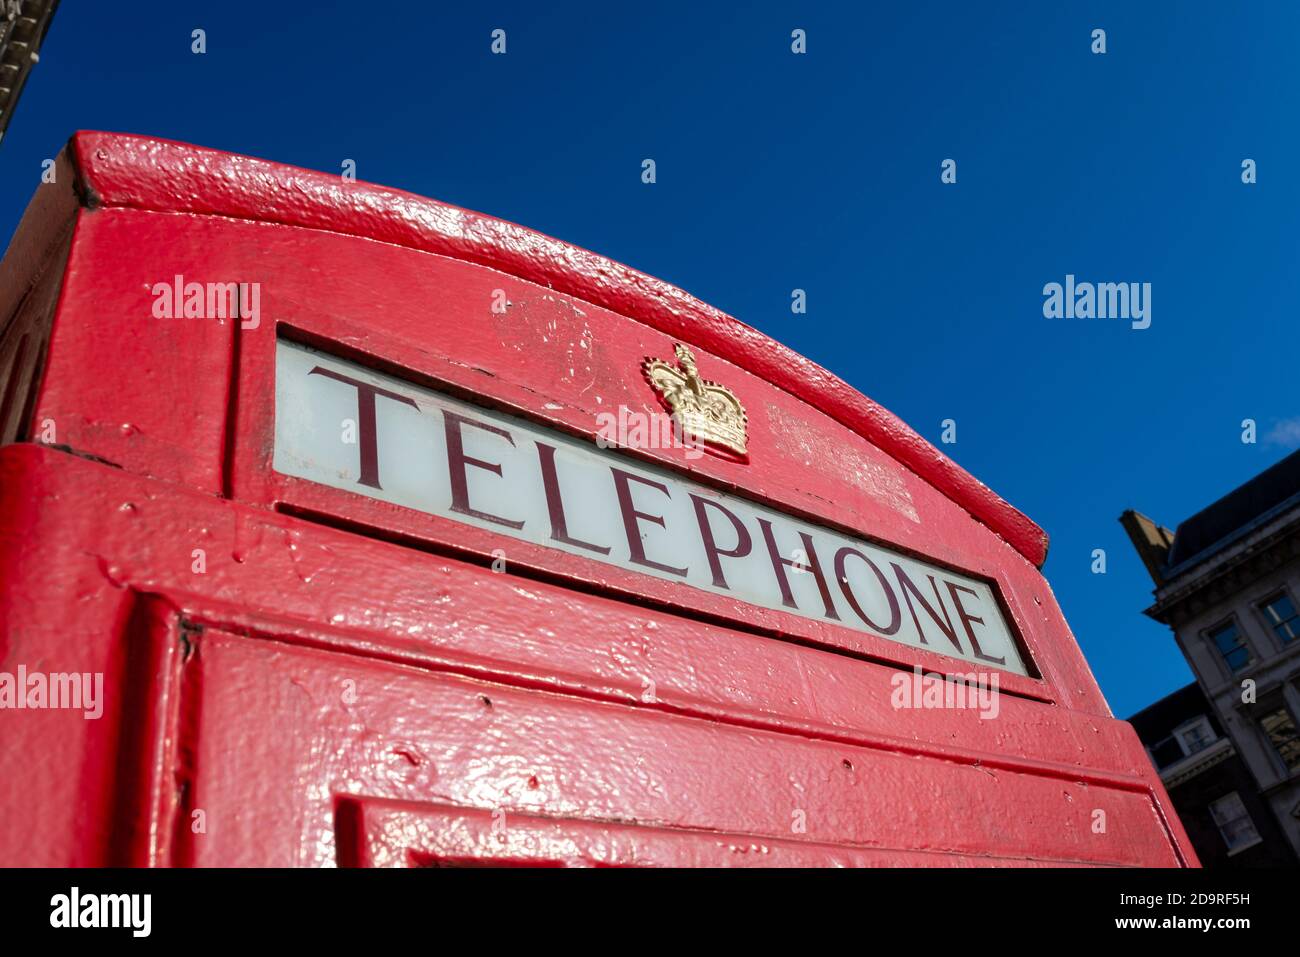 Detail einer roten Londoner Telefonbox. Rote Telefonbox Schriftzug und königliches Wappen. In Whitehall, Westminster, London, Großbritannien, in hellblauem Himmel Herbsttag Stockfoto